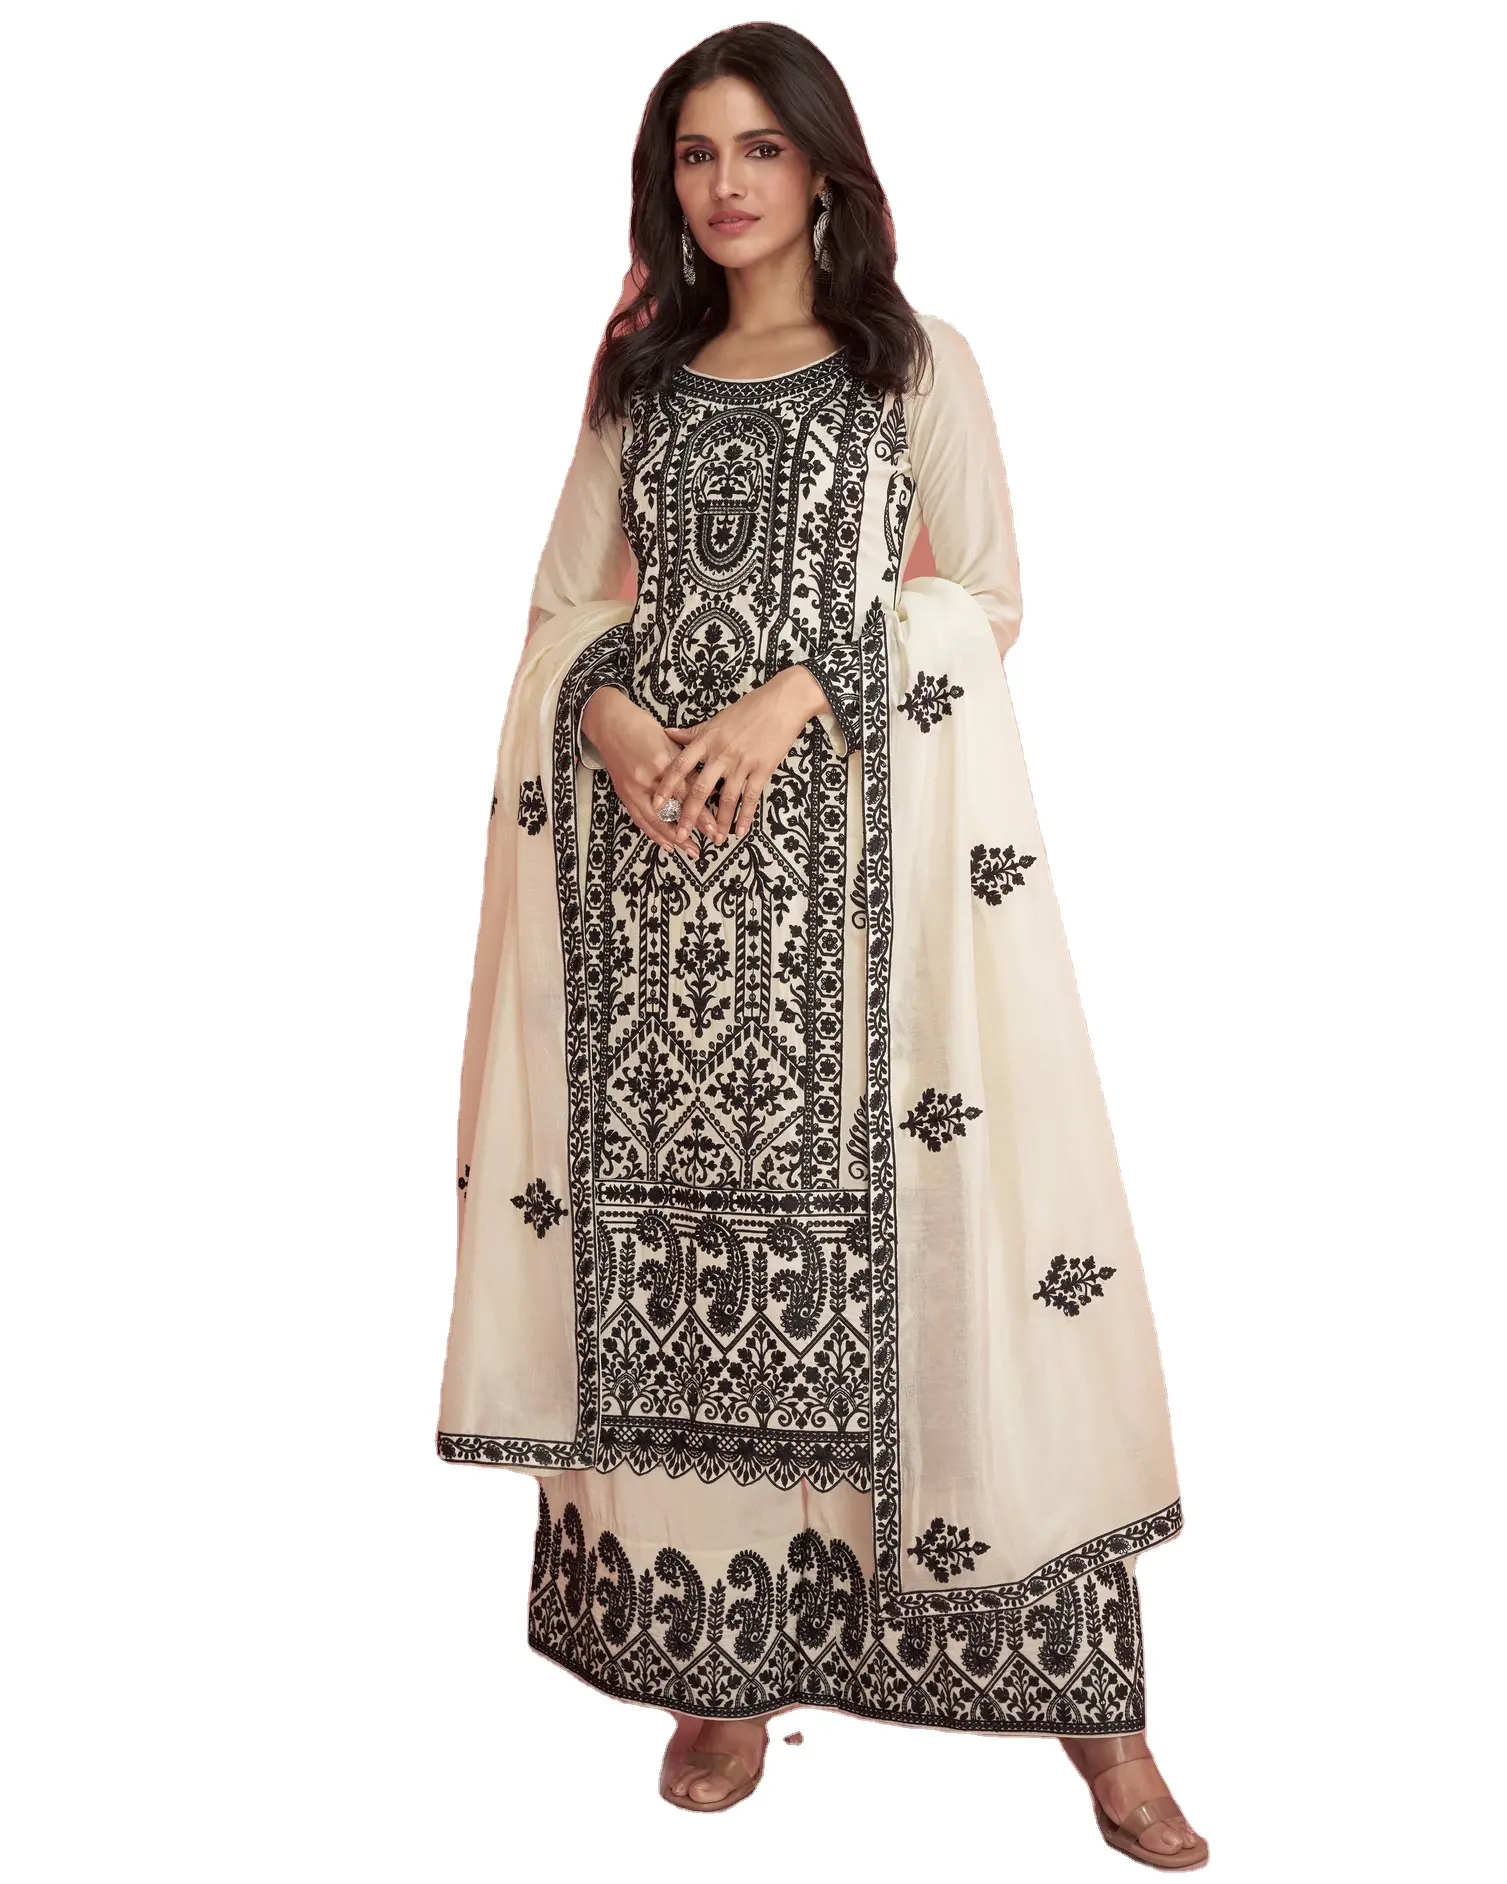 Hindistan'dan uygun fiyata mevcut bayan için Dupatta ile zarif dikişli işlemeli prim ipek şalvar elbise